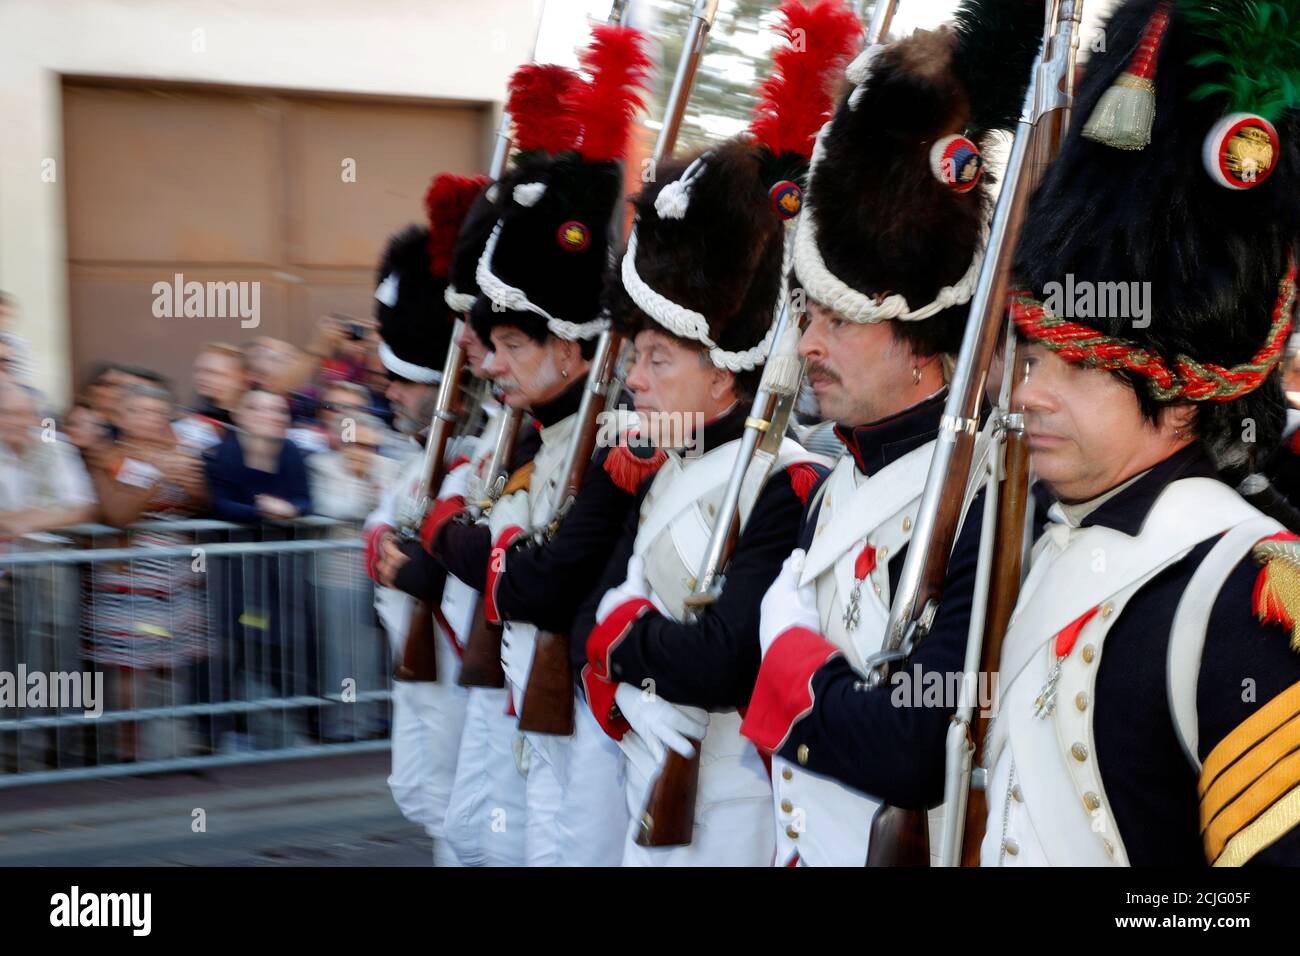 Los actores vestidos con uniformes del ejército napoleónico asisten al  desfile en las calles durante el Jubileo de Napoleón, reuniendo a cientos  de participantes durante el fin de semana en el suburbio